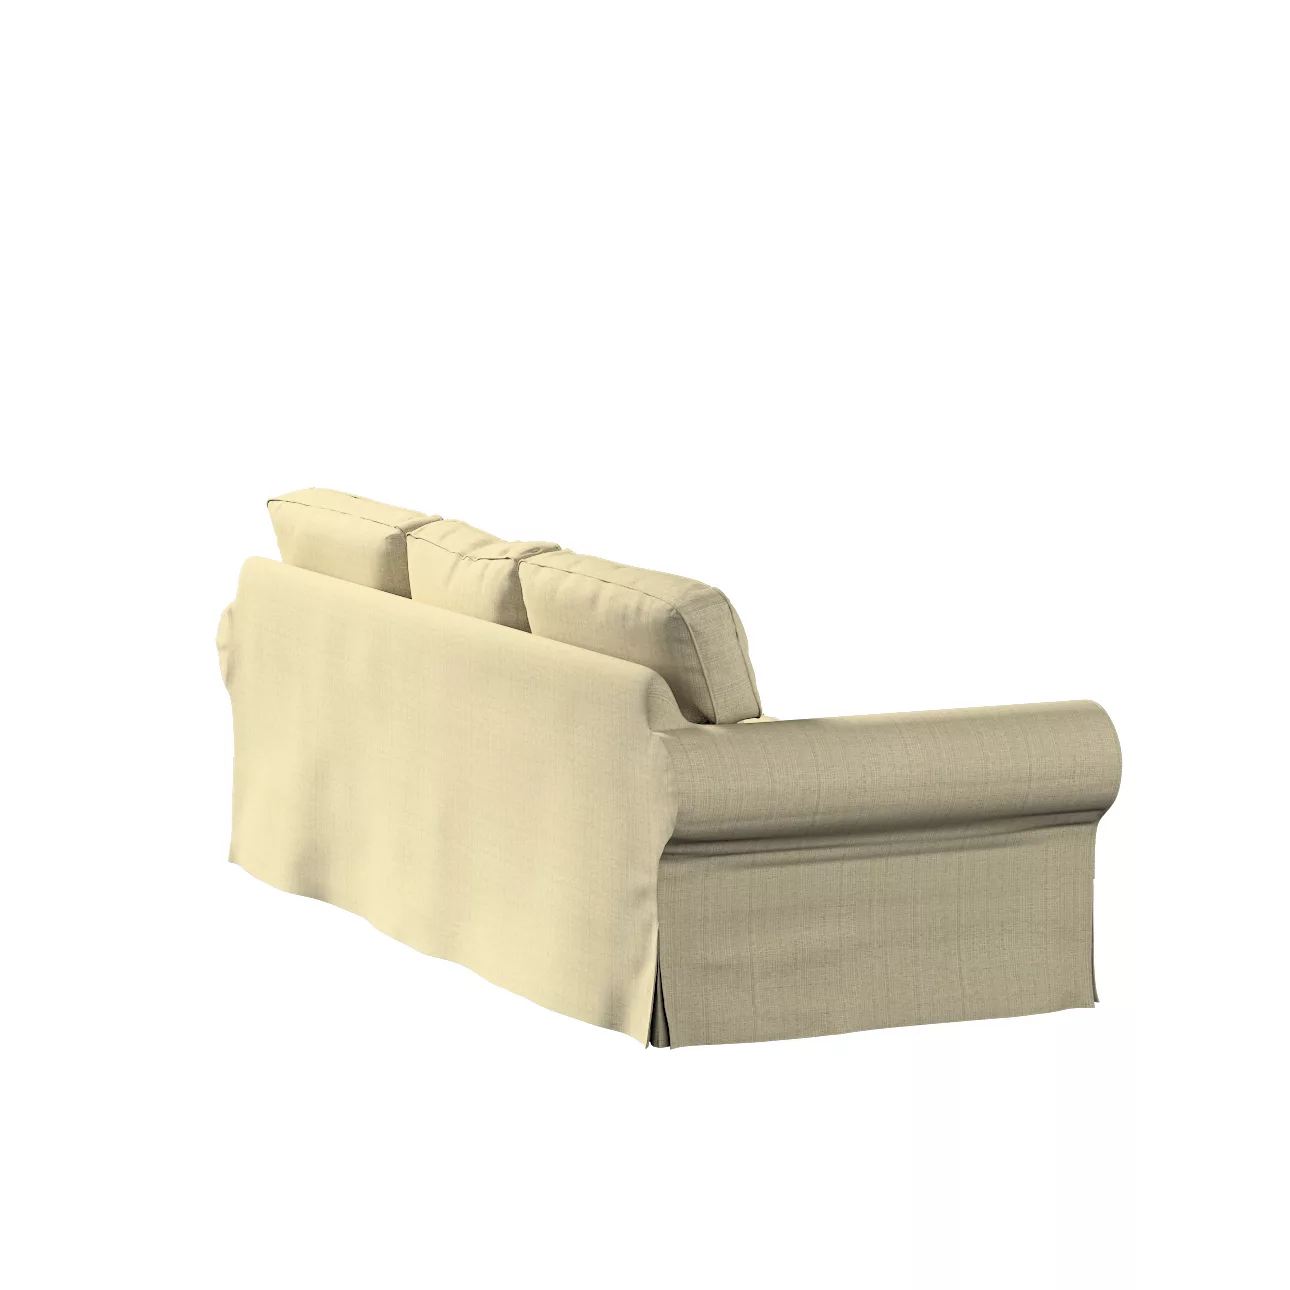 Bezug für Ektorp 3-Sitzer Schlafsofa, ALTES Modell, beige-creme, Sofahusse günstig online kaufen